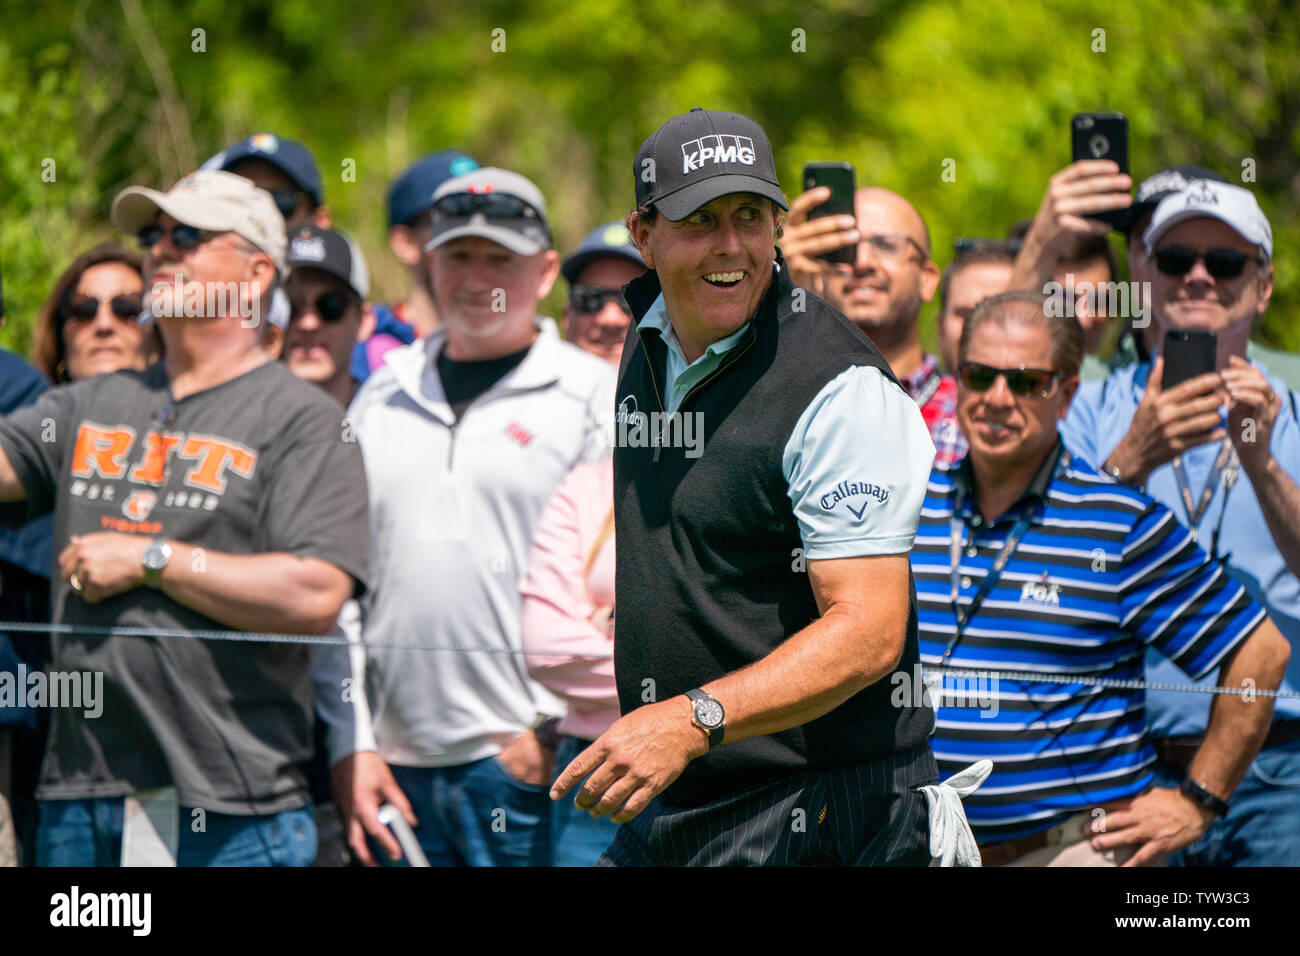 Phil Mickelson riconosce tifosi durante il primo turno al campionato di PGA presso il corso di Nero a Bethpage State Park di Farmingdale, New York il 16 maggio 2019. Foto di Corey Sipkin/UPI Foto Stock